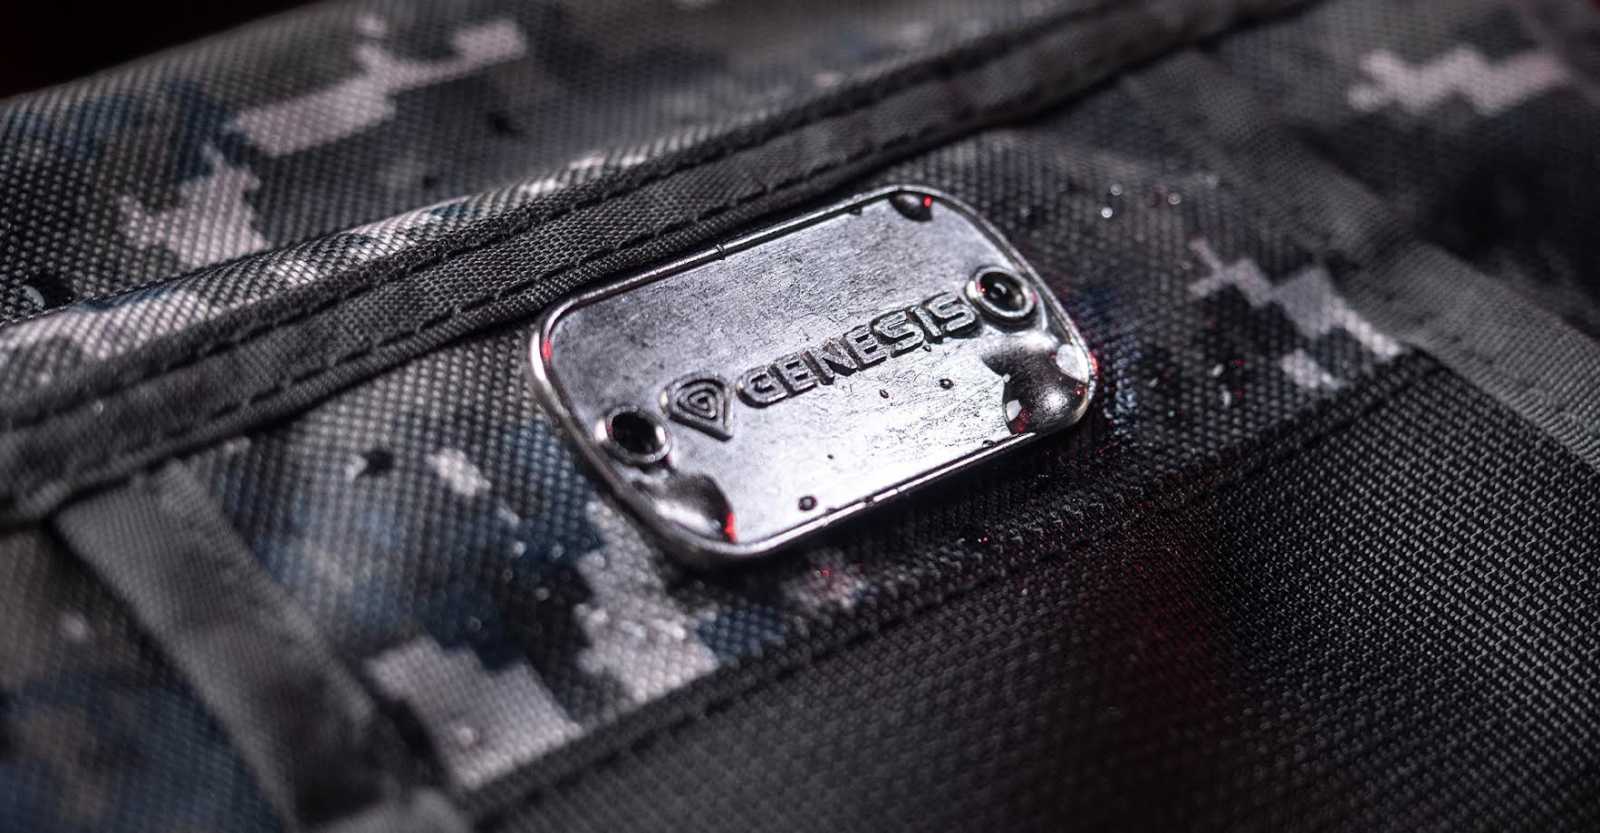 Genesis Pallad 450 Lite, druhá generace oblíbených herních batohů v odlehčené verzi s pixelovou kamufláží